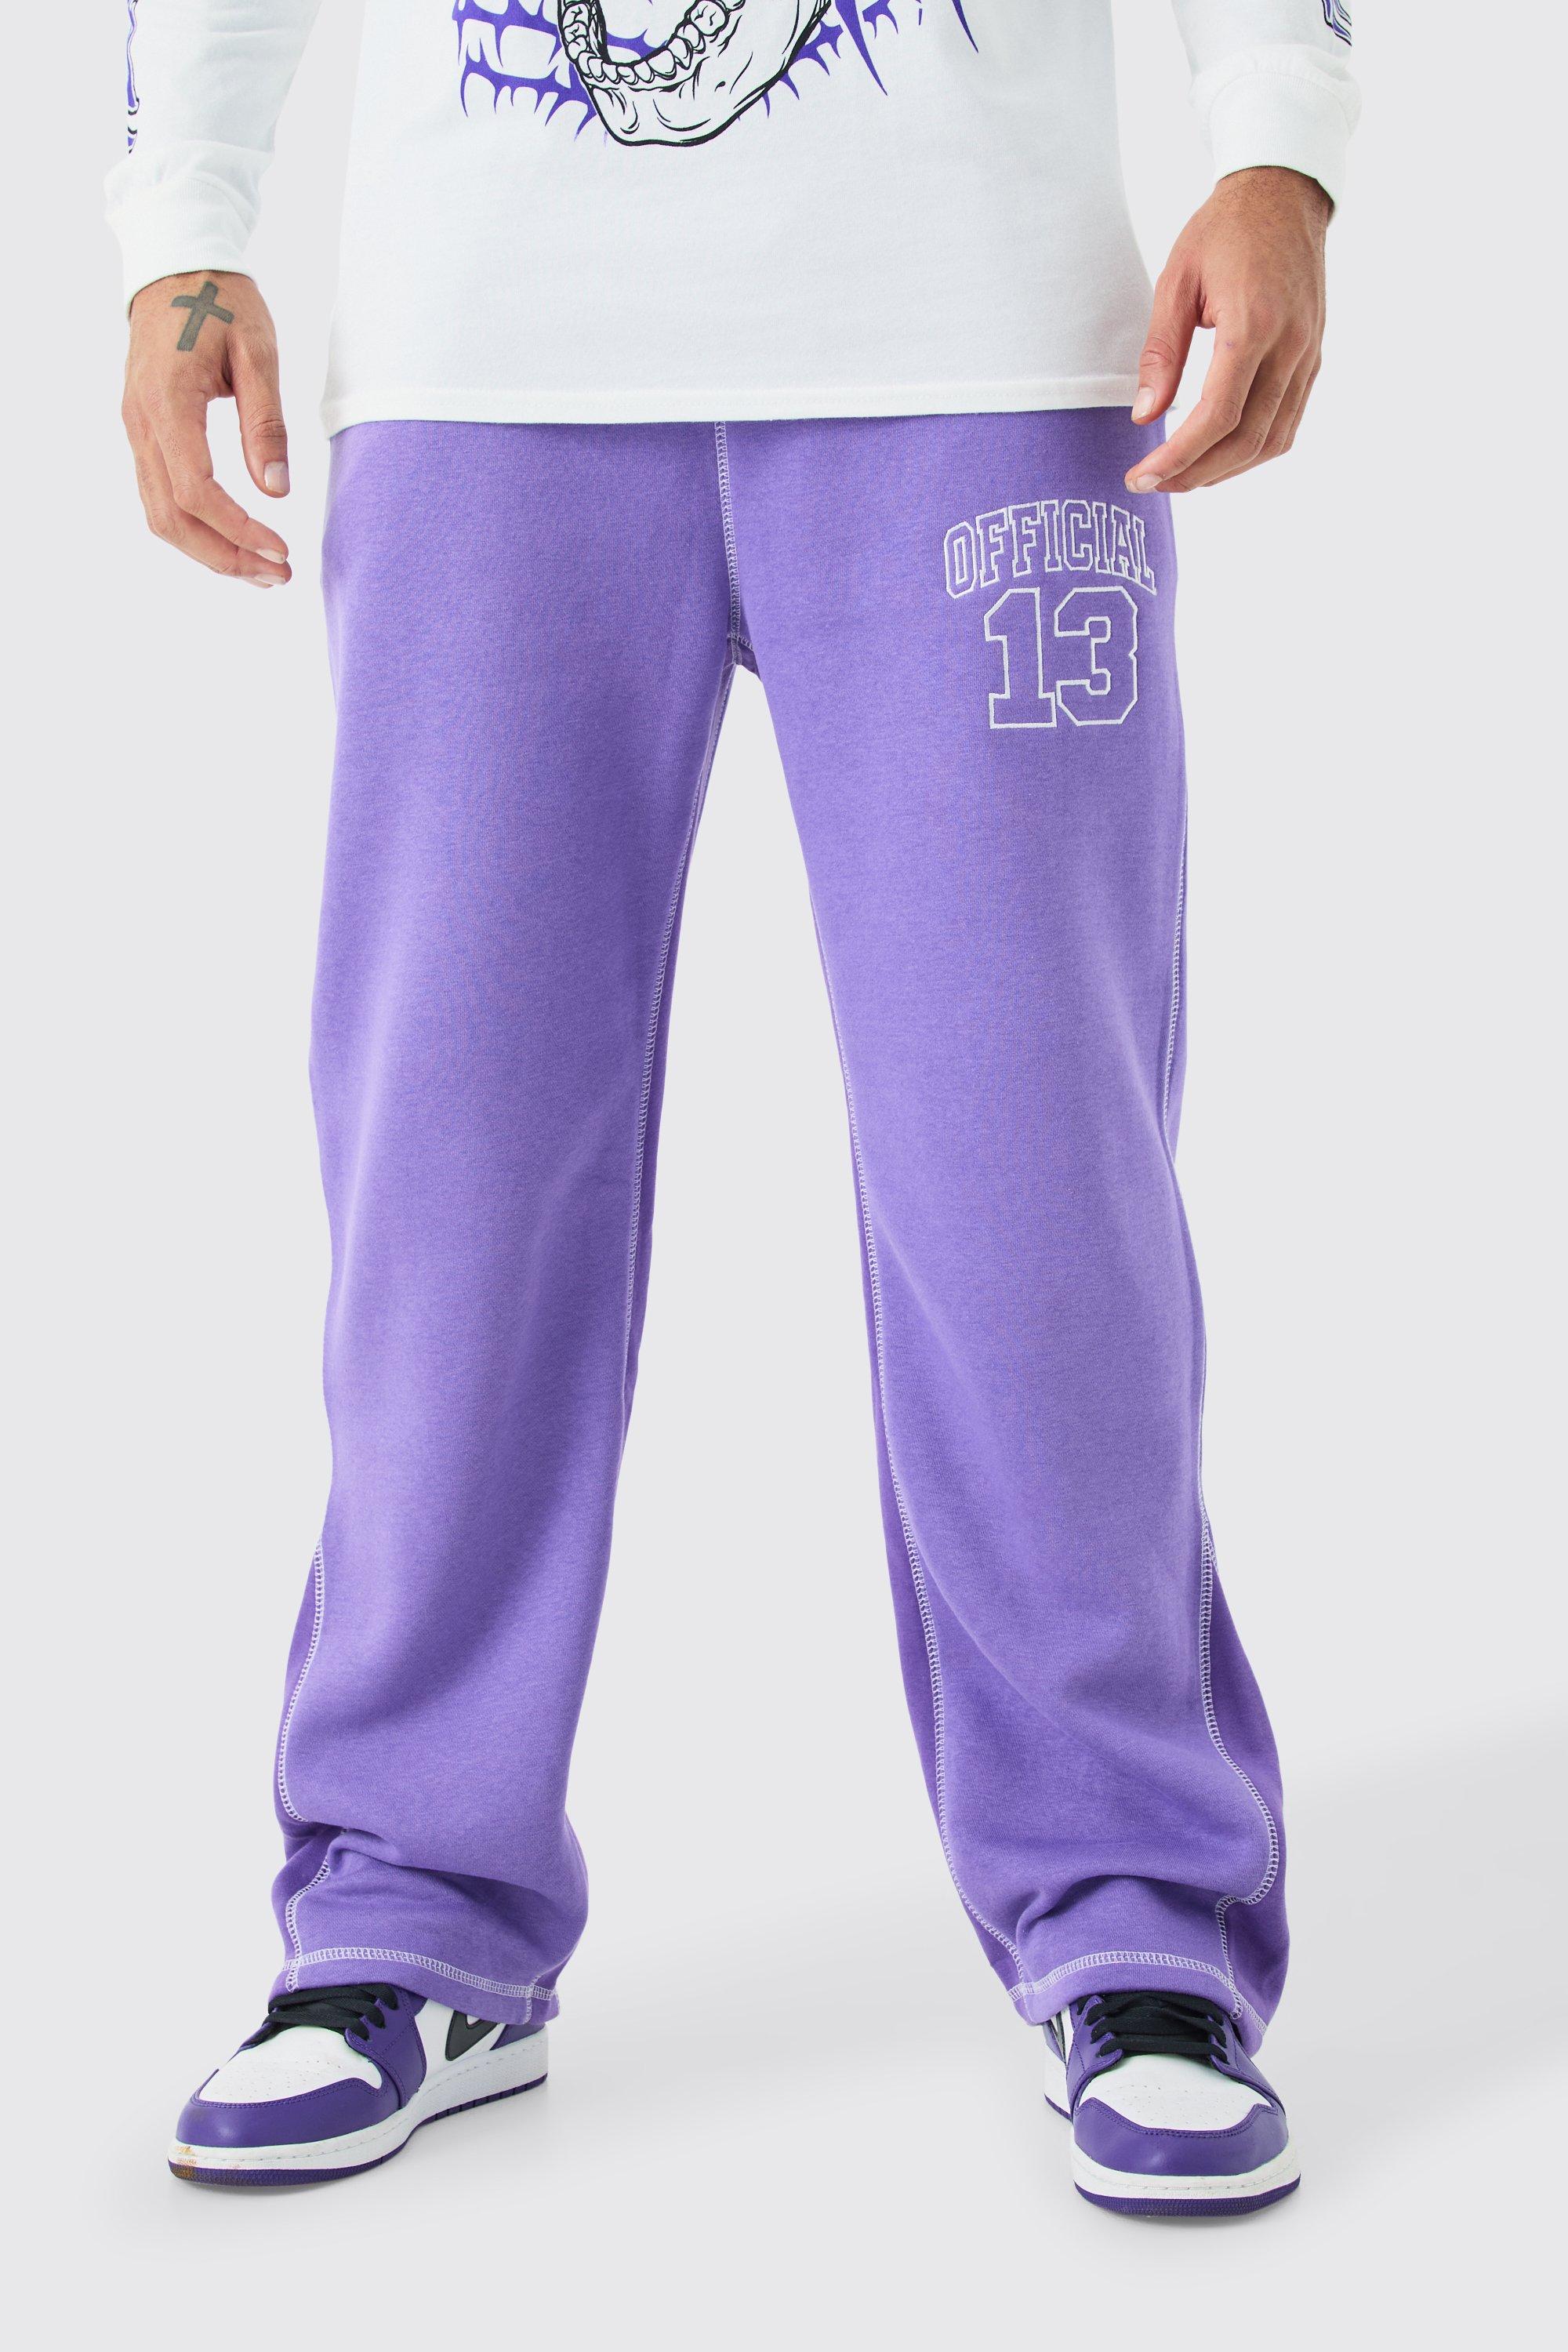 Image of Pantaloni tuta rilassati Official con cuciture a contrasto e inserti, Purple